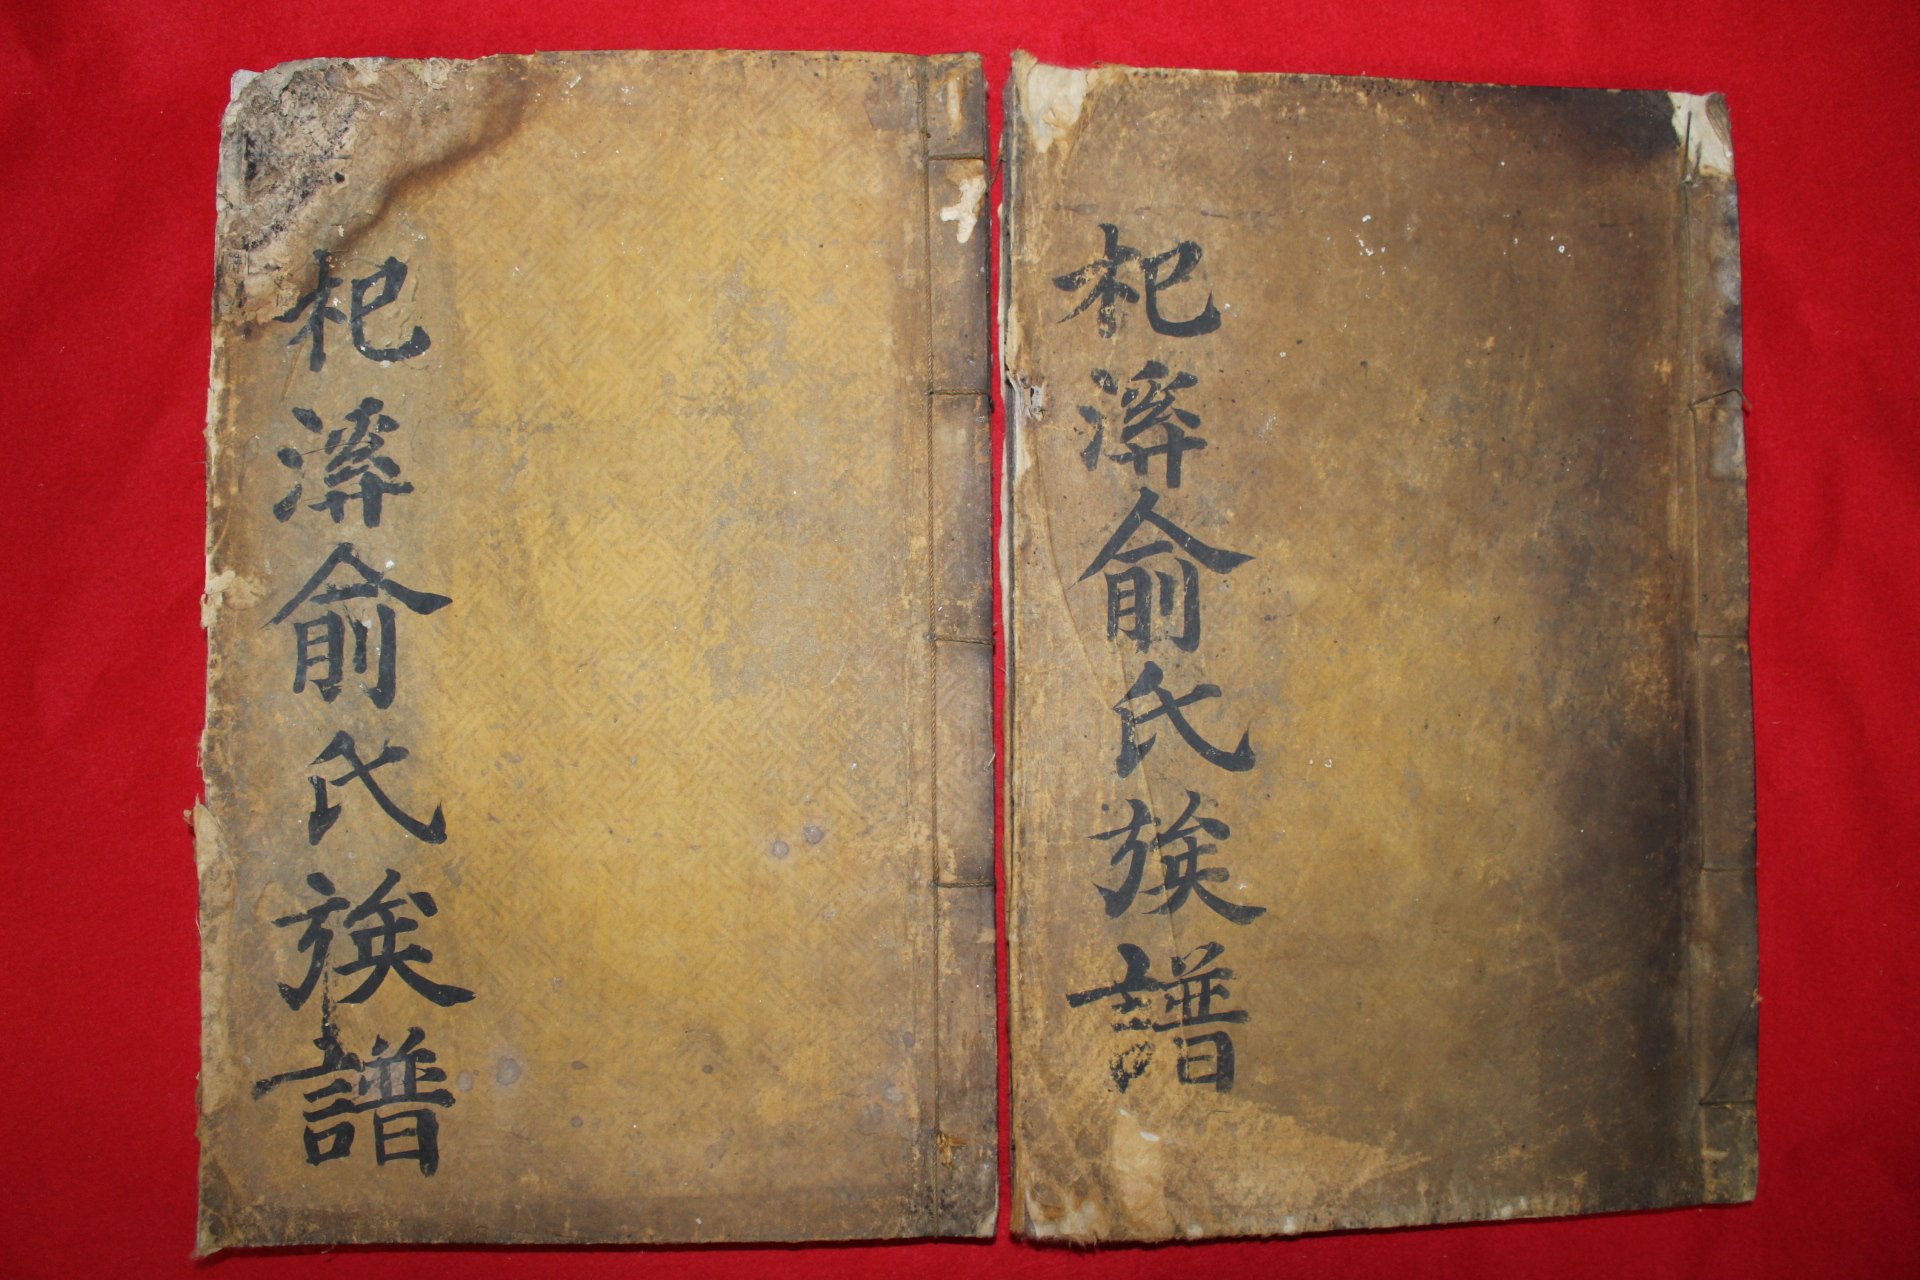 1700년대 금속활자본 기계유씨족보(杞溪兪氏族譜) 충목공파(忠穆公諱泓)상하 2책완질